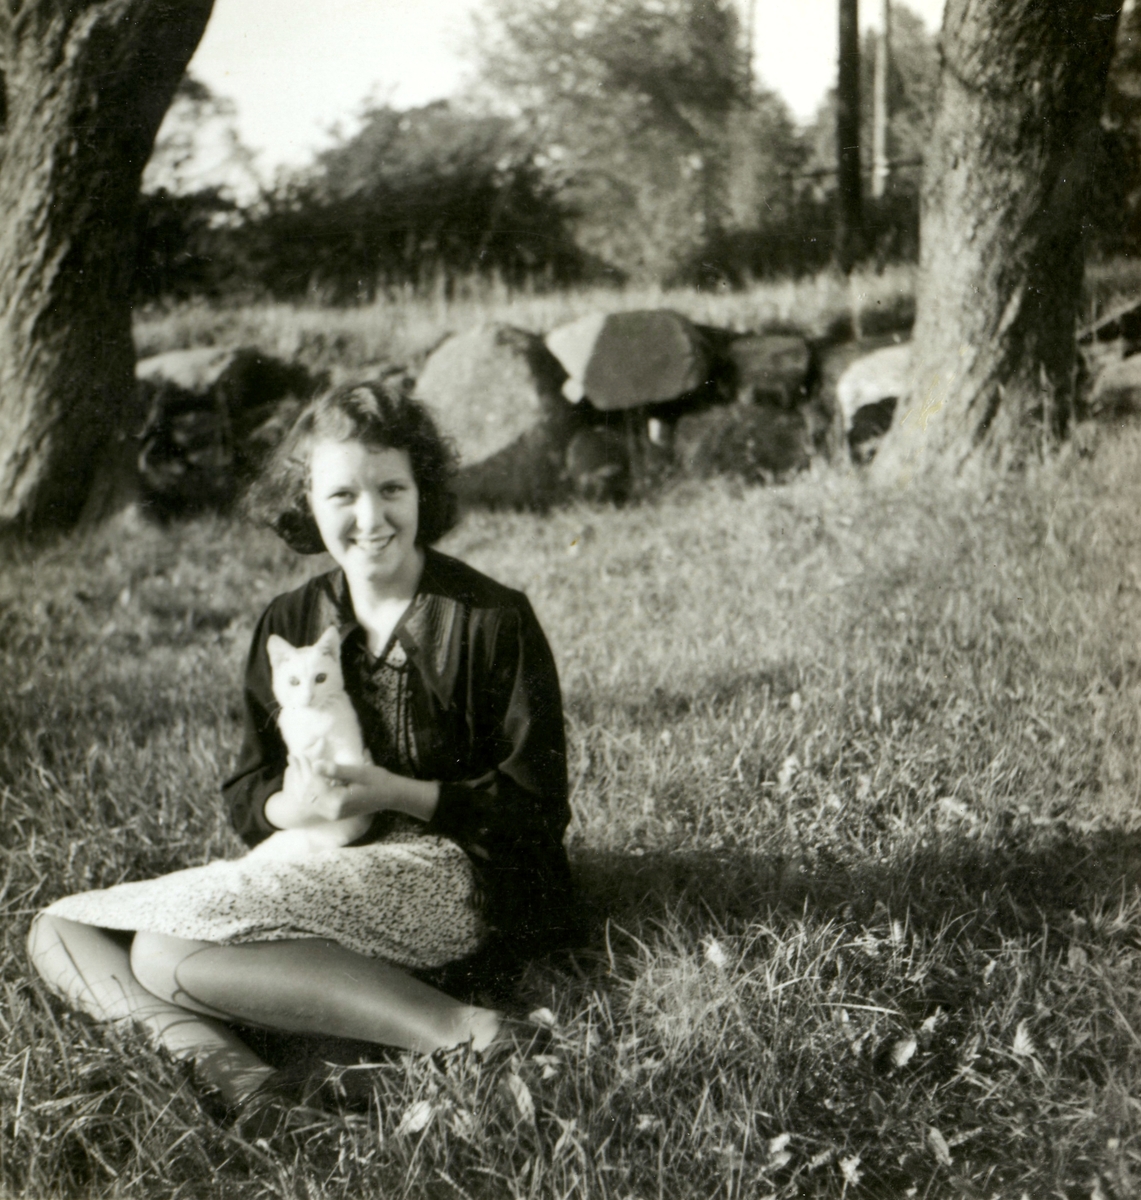 Ingrid Andersson (1918 - 2001, gift Skansing) sitter på gräsmattan hållandes en vit kattunge, Livered 1:15 "Majas" okänt årtal. I bakgrunden ses en gärdesgård.